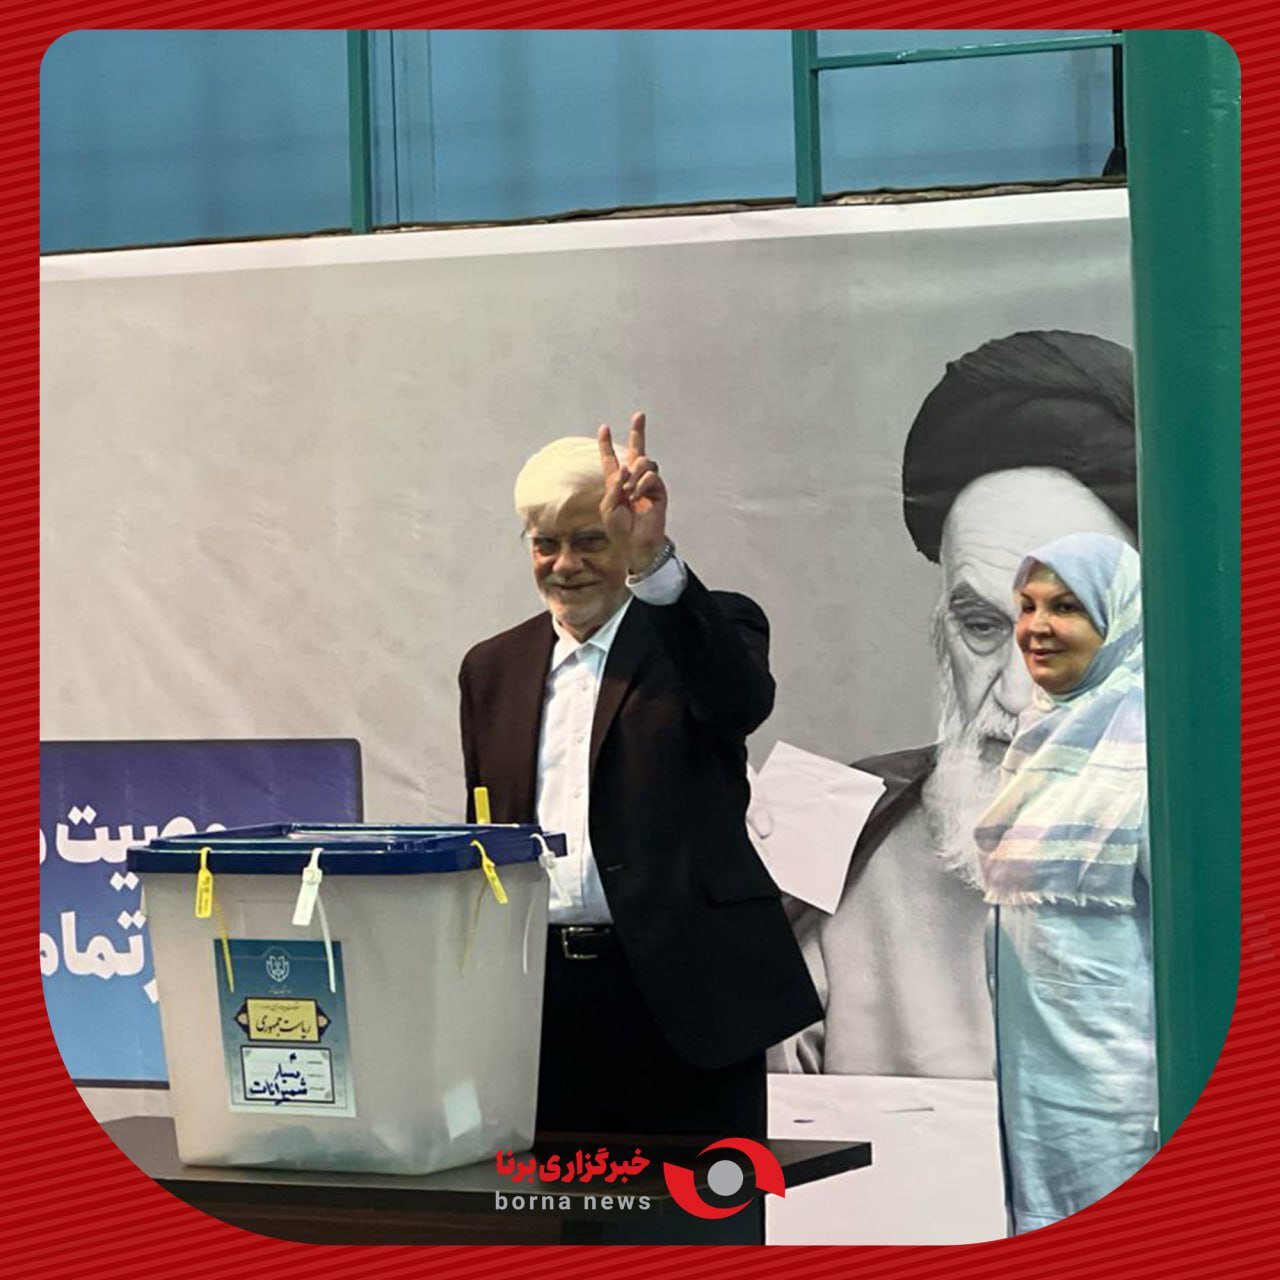 محمدرضا عارف با همسرش آمد: رأی ندادن به معنای رأی دادن به نظر مخالف است /محسن هاشمی به حسینیه جماران رفت +عکس